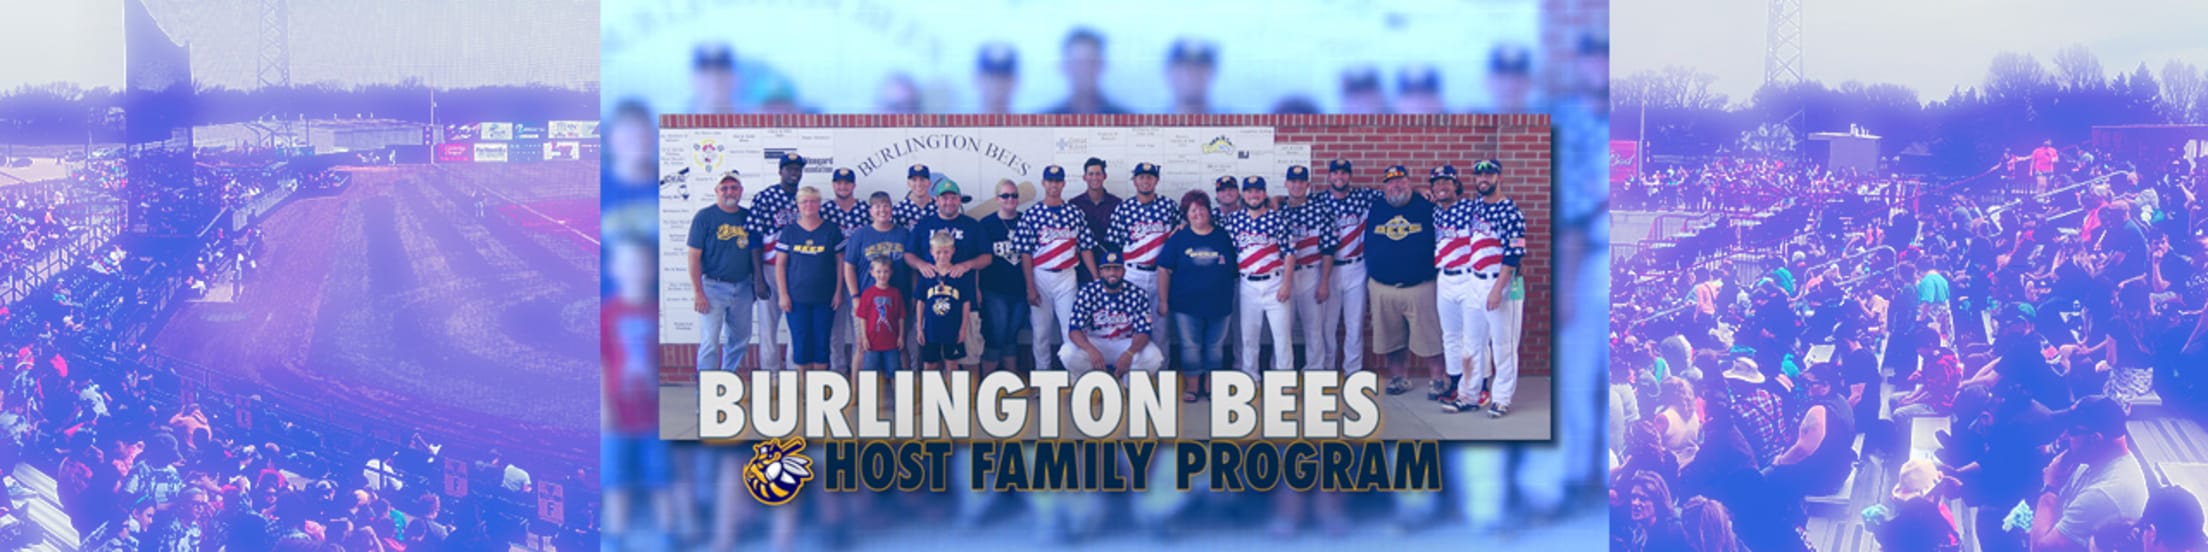 Burlington Bees | MiLB.com